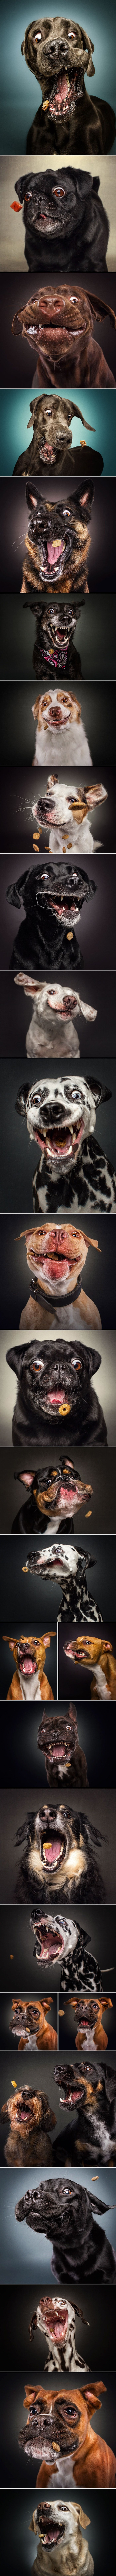 25 urnebesnih slika pasa koji pokušavaju uhvatiti svoju poslasticu u zraku!